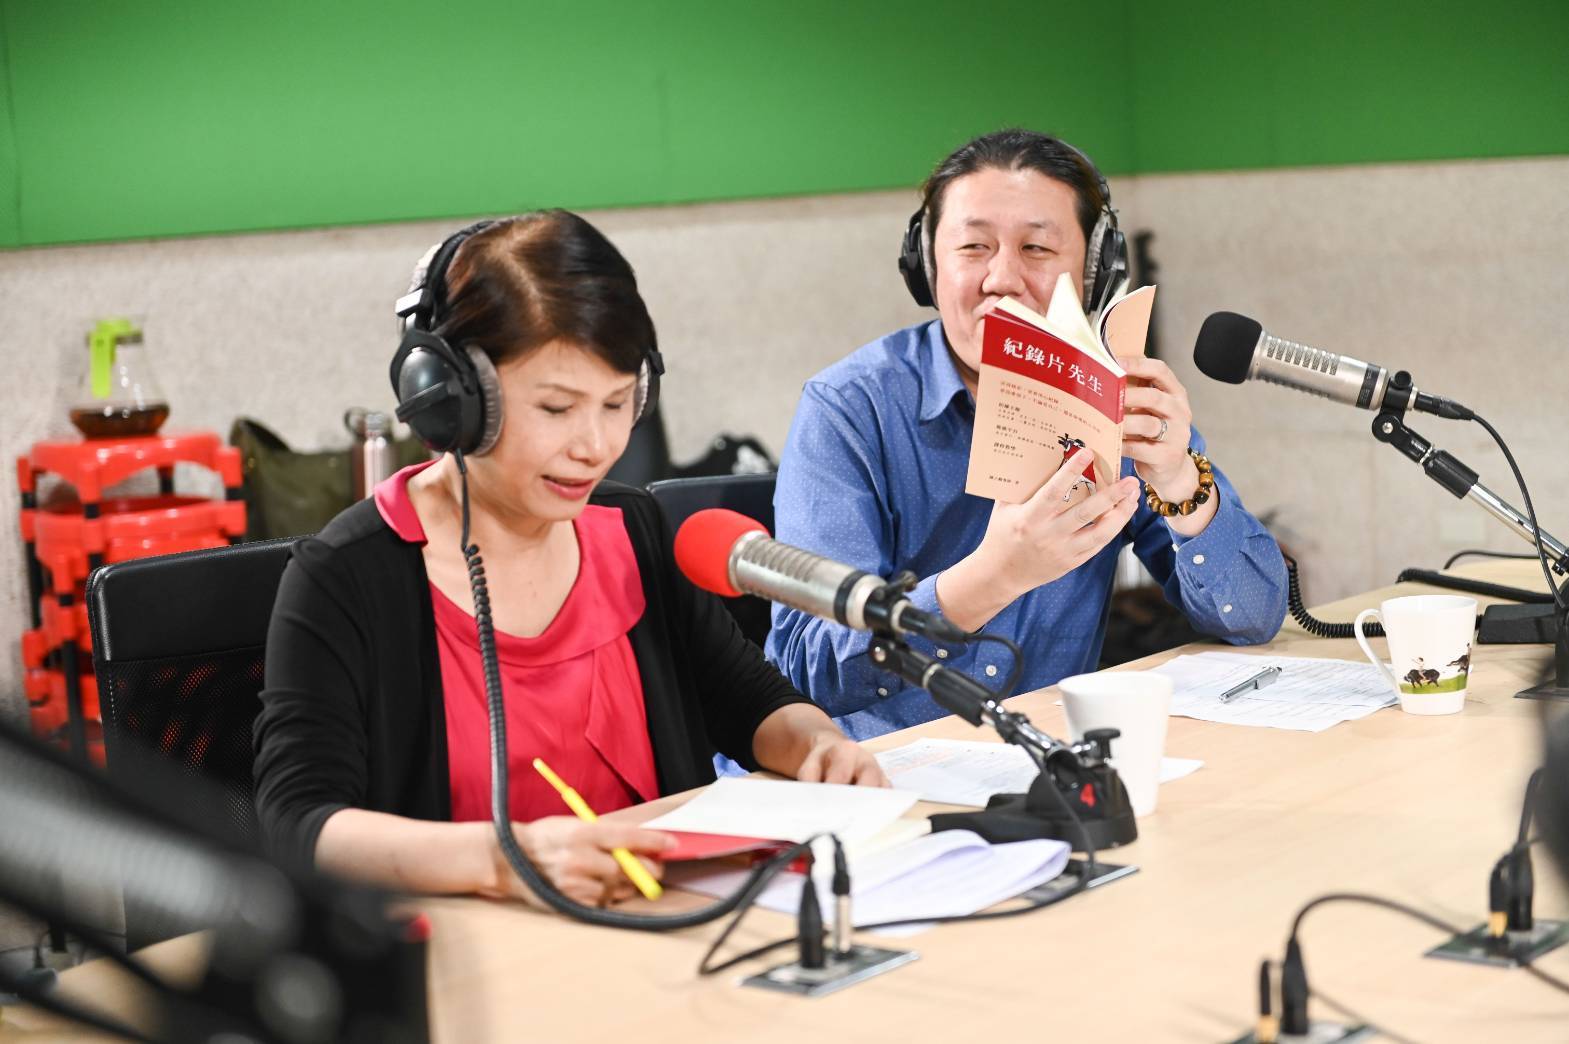 節目主持人張翠園(左)與劉懷幃老師(右)介紹由陳正勳導演撰寫的《紀錄片先生》